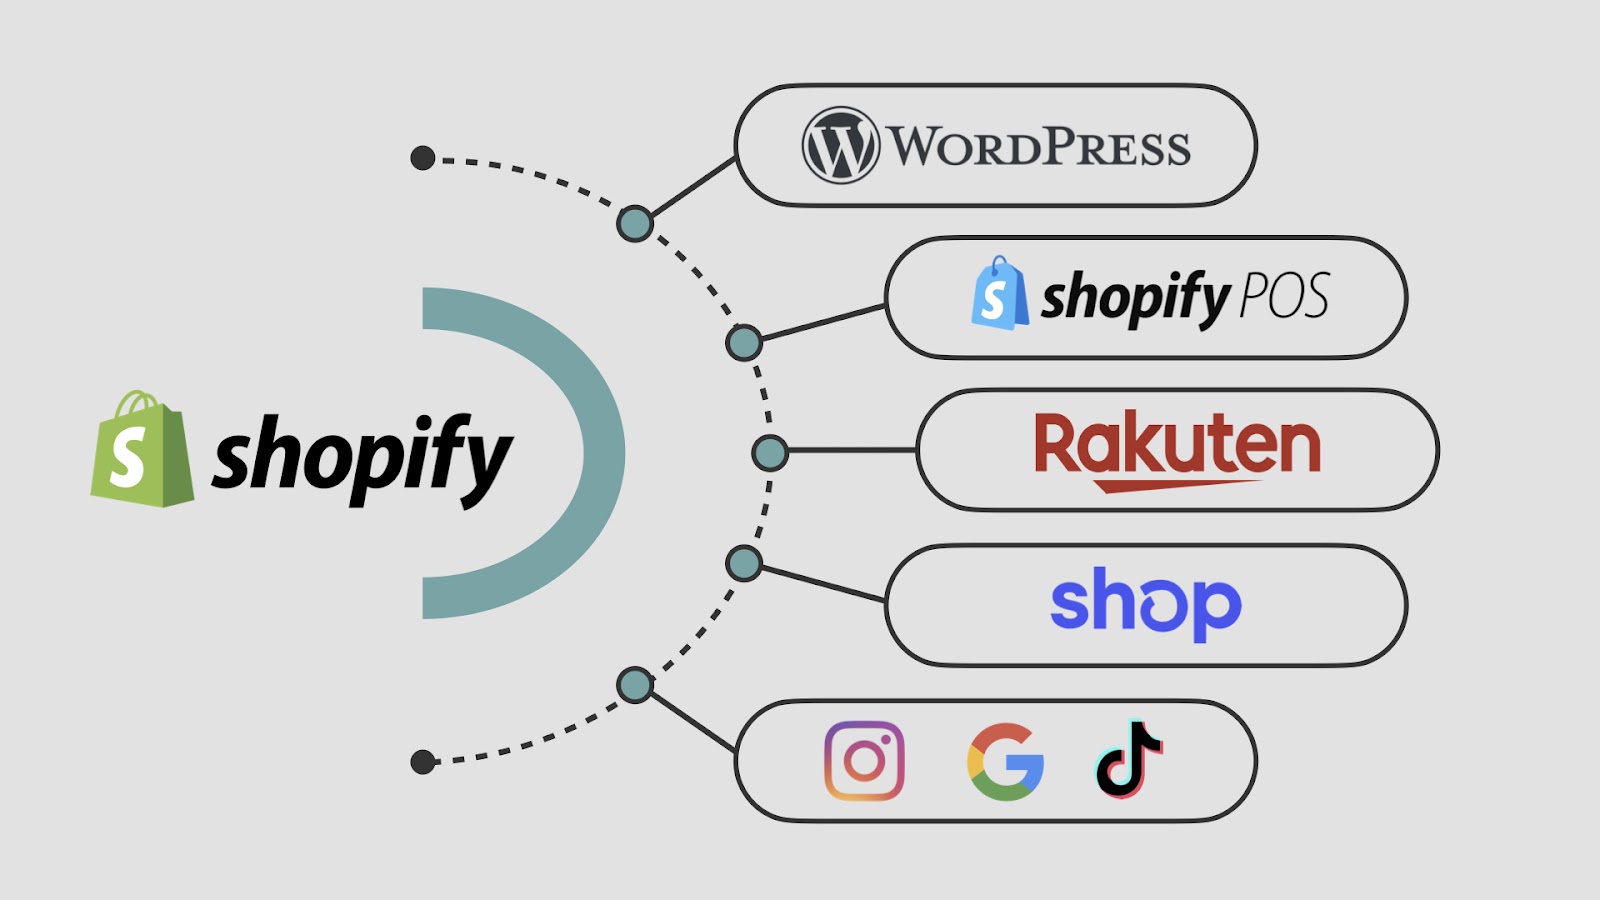 Shopifyの場合、ブログやSNS、他のモール型ECサイトと連携することで、それらのプラットフォーム上でもShopifyに登録した商品を販売することができます。このような複数の販売チャネルを通じてユーザーにアプローチする販売戦略のことを「マルチチャネル」と言います。